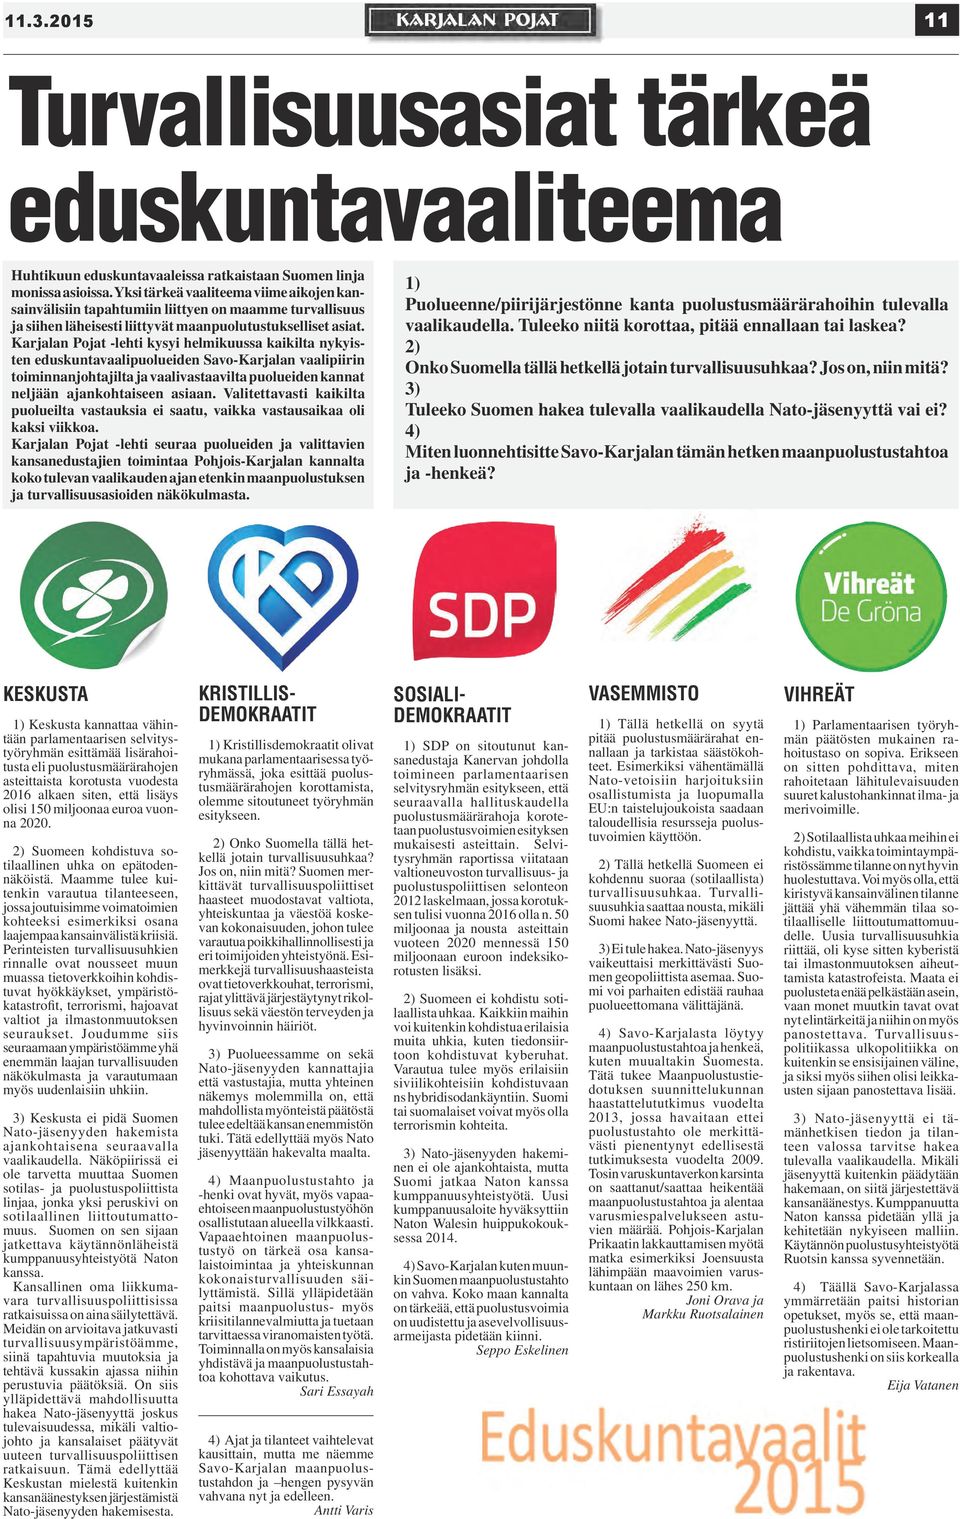 Karjalan Pojat -lehti kysyi helmikuussa kaikilta nykyisten eduskuntavaalipuolueiden Savo-Karjalan vaalipiirin toiminnanjohtajilta ja vaalivastaavilta puolueiden kannat neljään ajankohtaiseen asiaan.